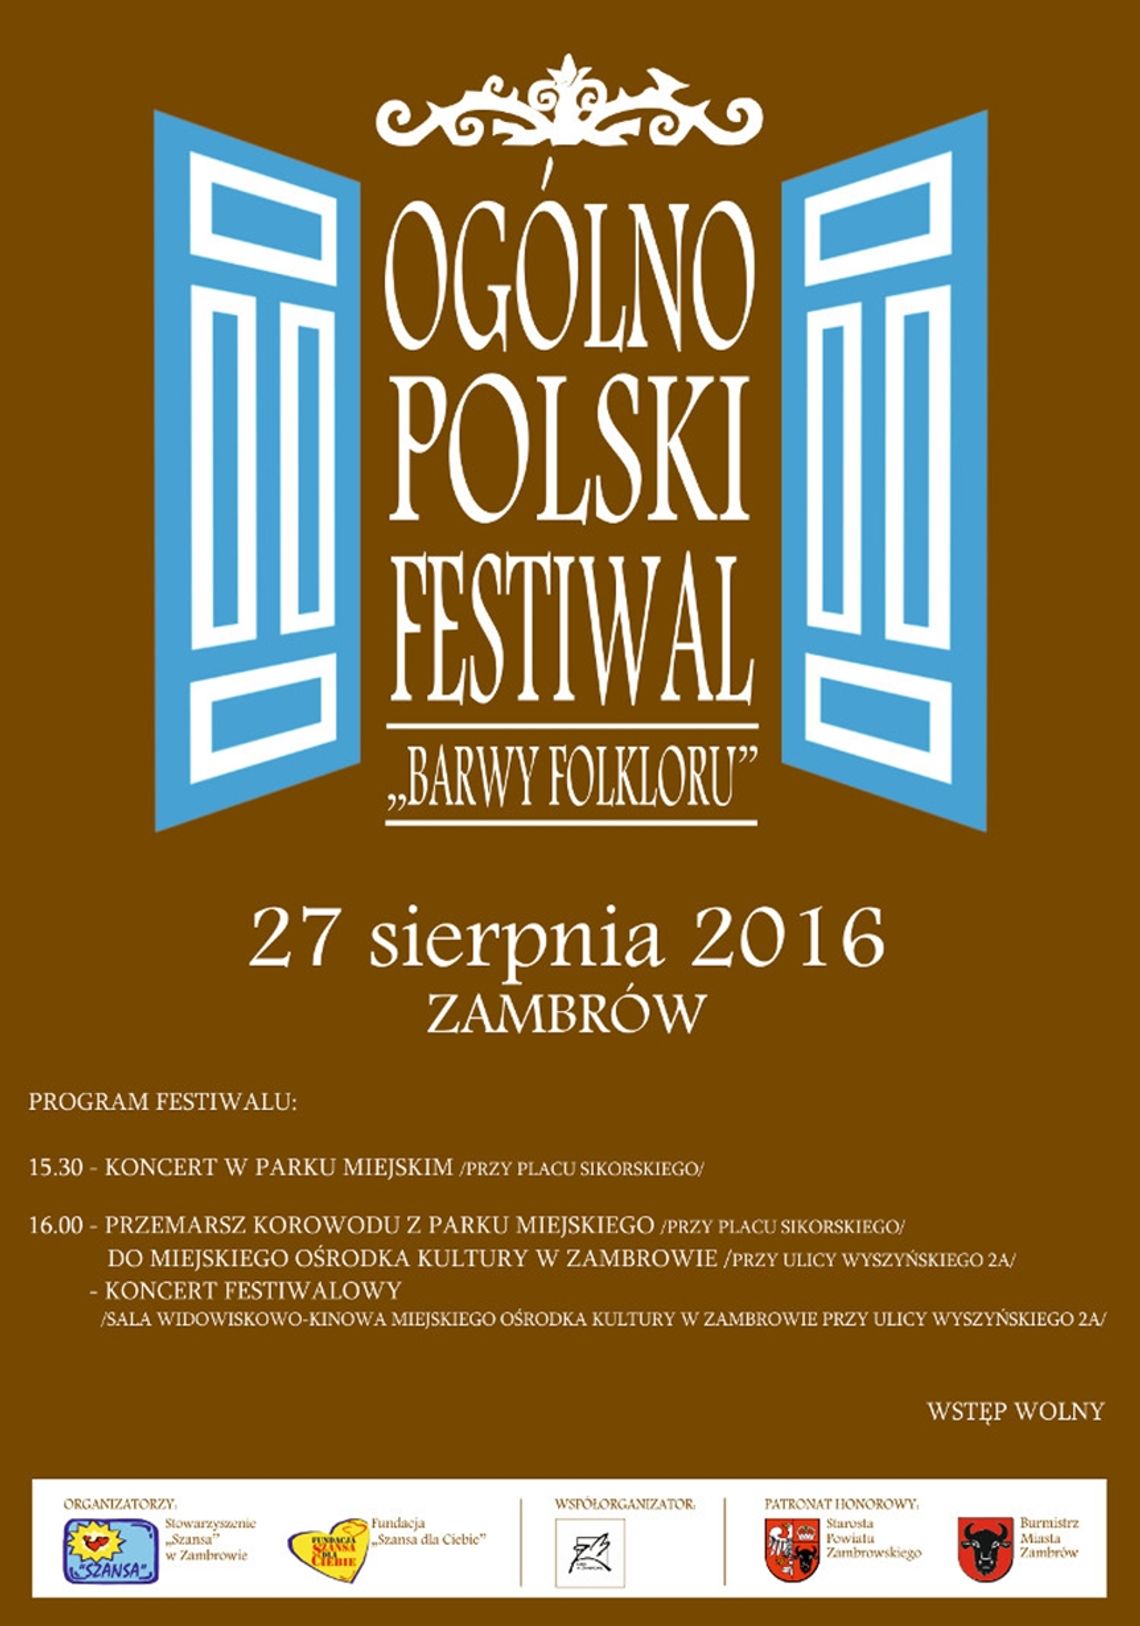 Ogólnopolski festiwal "Barwy folkloru" w Zambrowie